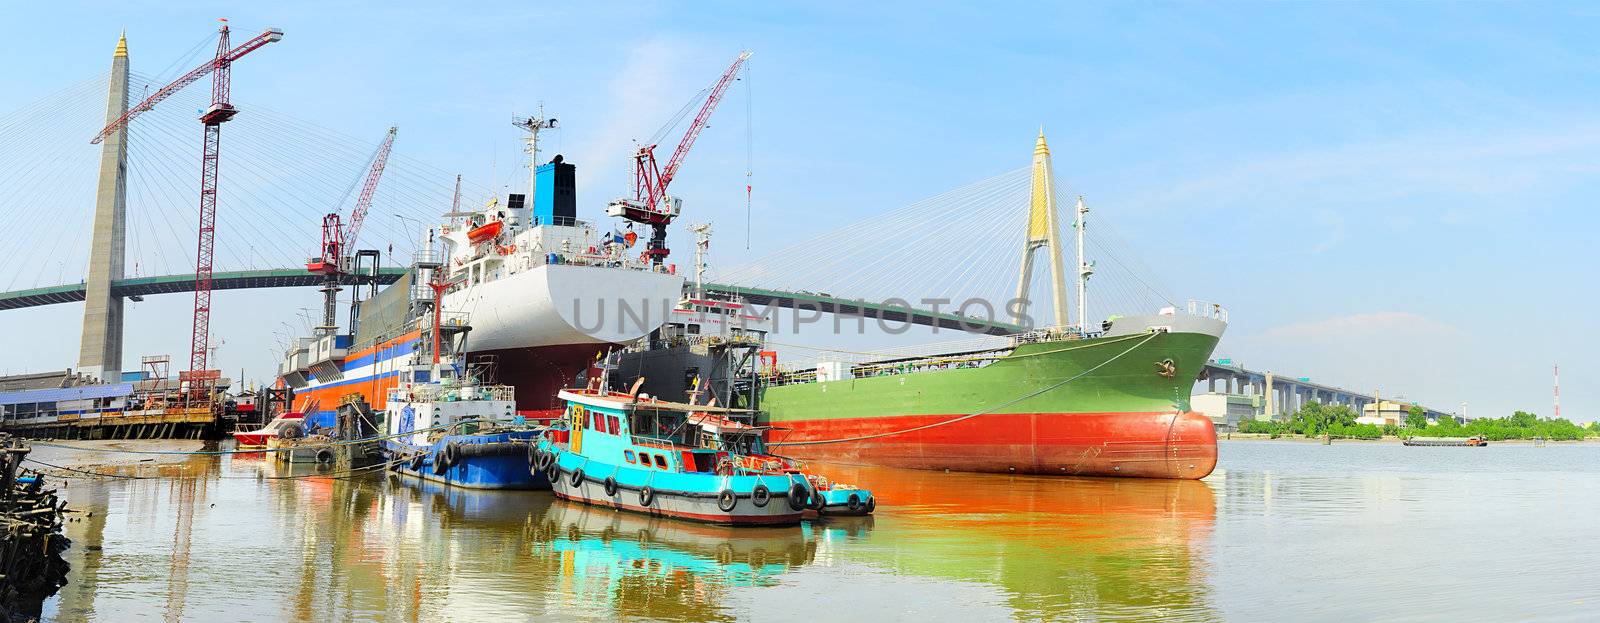 Shipyard in Bangkok by joyfull